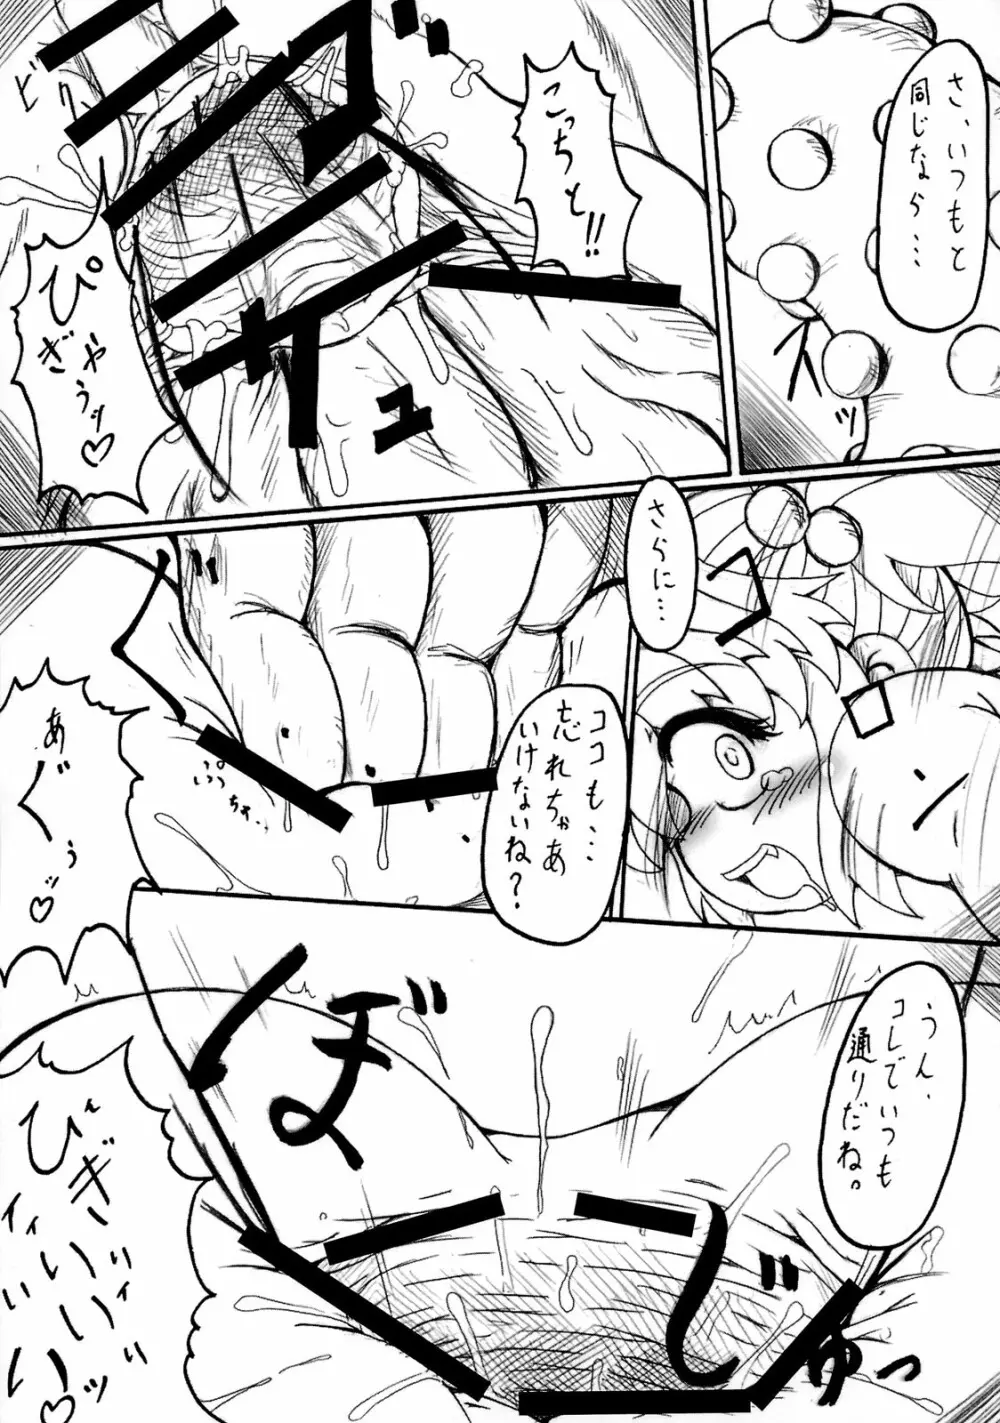 Misora-chan X Tento! X Tashii! 16ページ